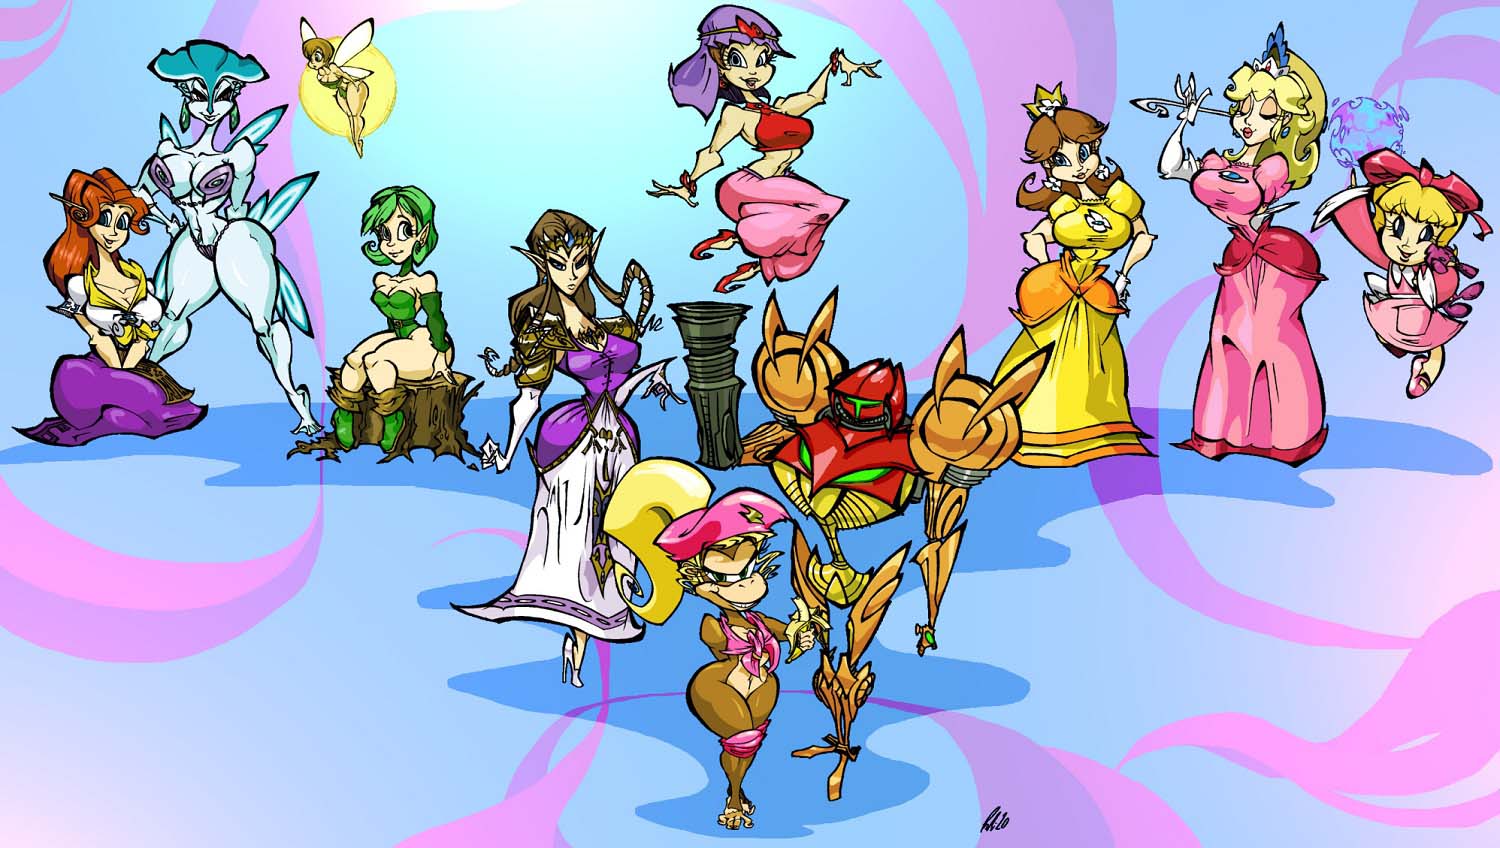 Nintendo_Ladies-zelda-peach-dixie-game-characters-fan-art-by_BrendanCorris.jpg